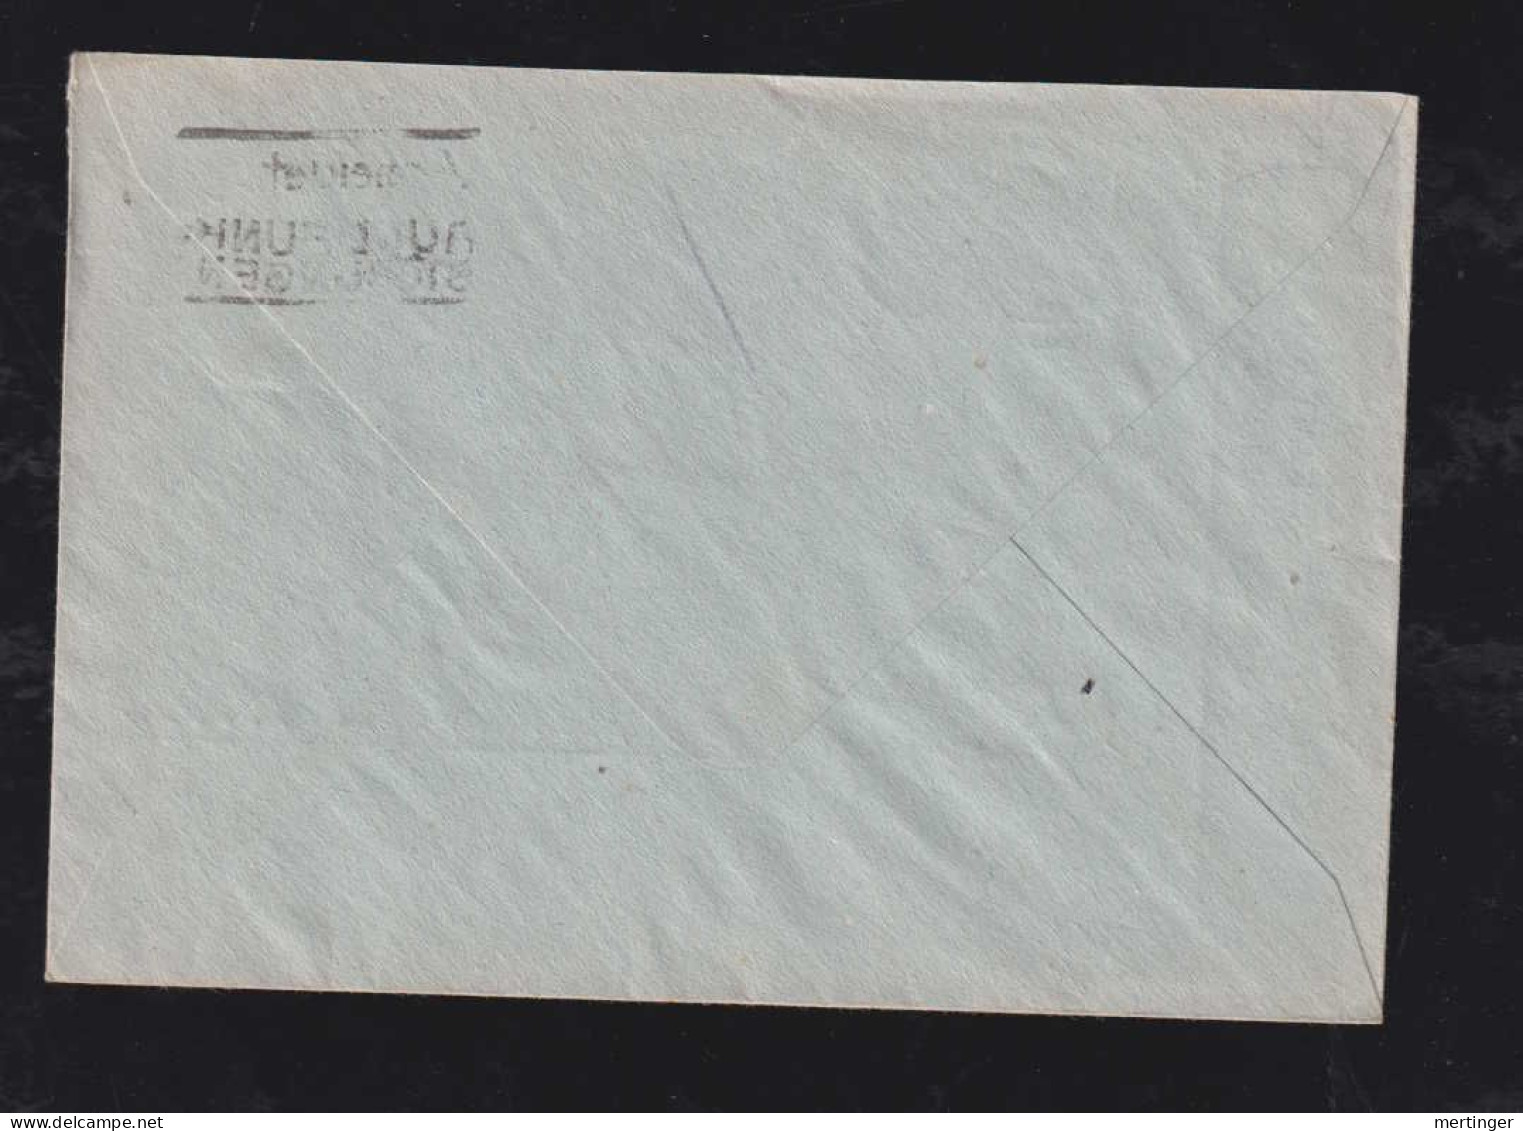 All. Besetzung 1946 Postsache Brief Postscheckamt Köln X VIERSEN - Lettres & Documents